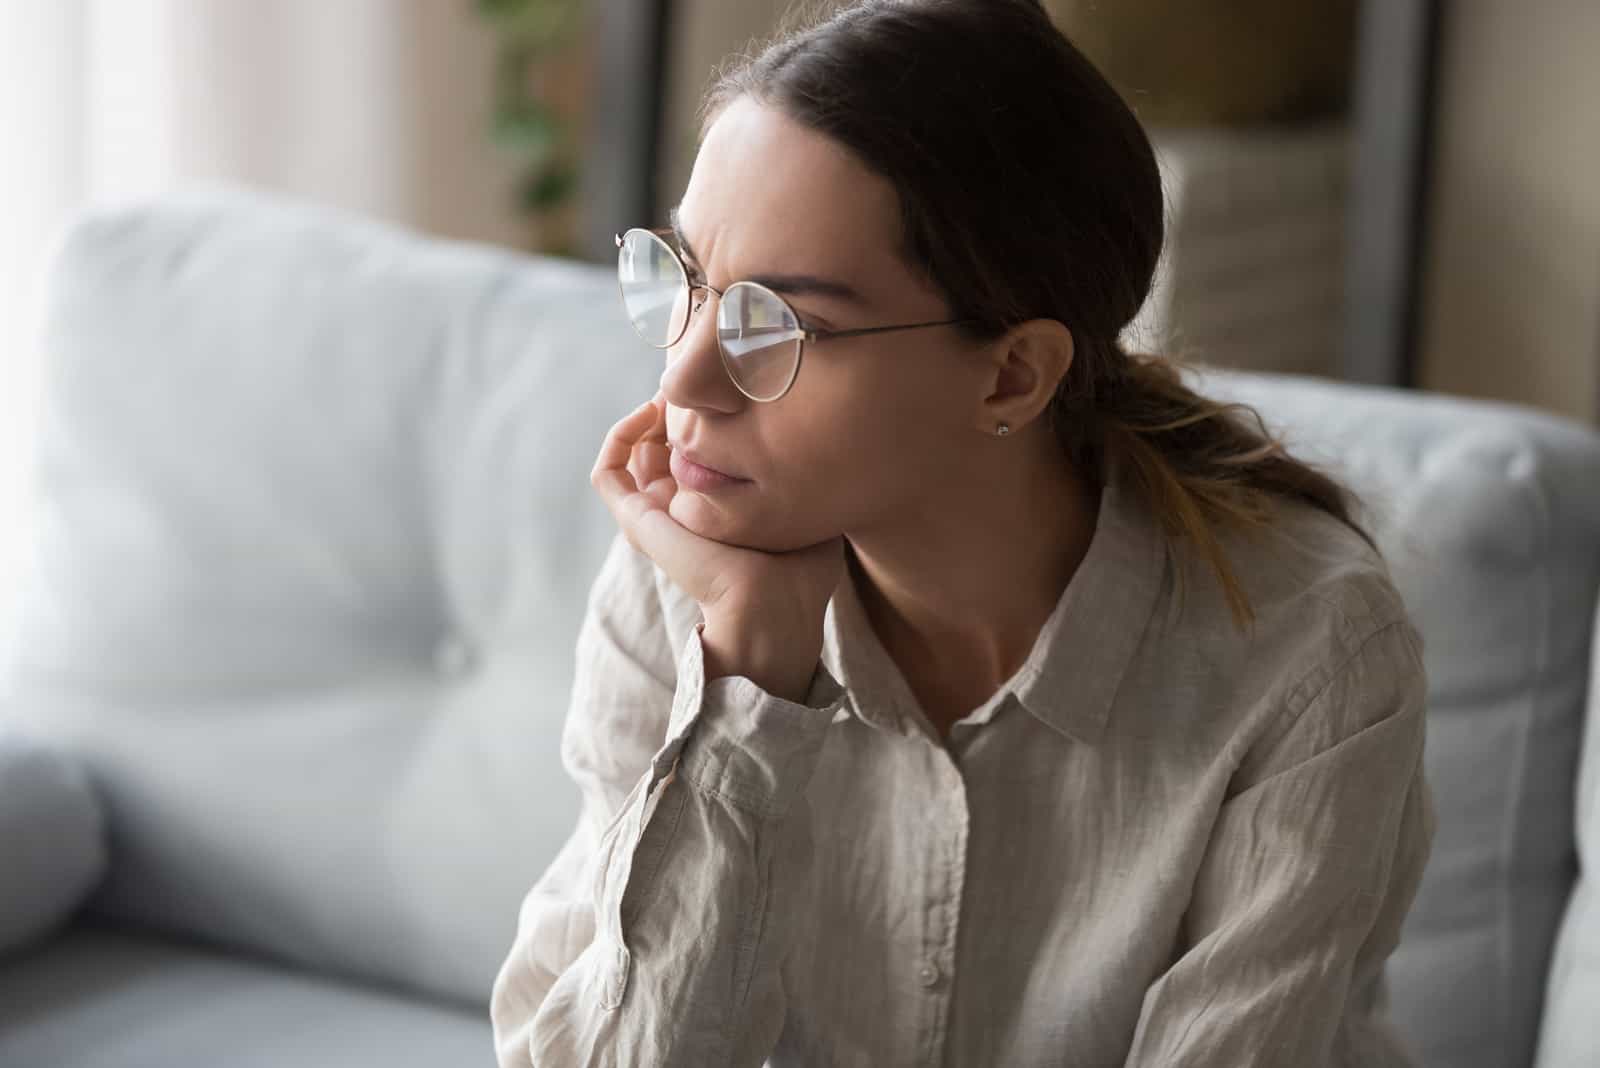 donna seria con occhiali seduta in profonda riflessione